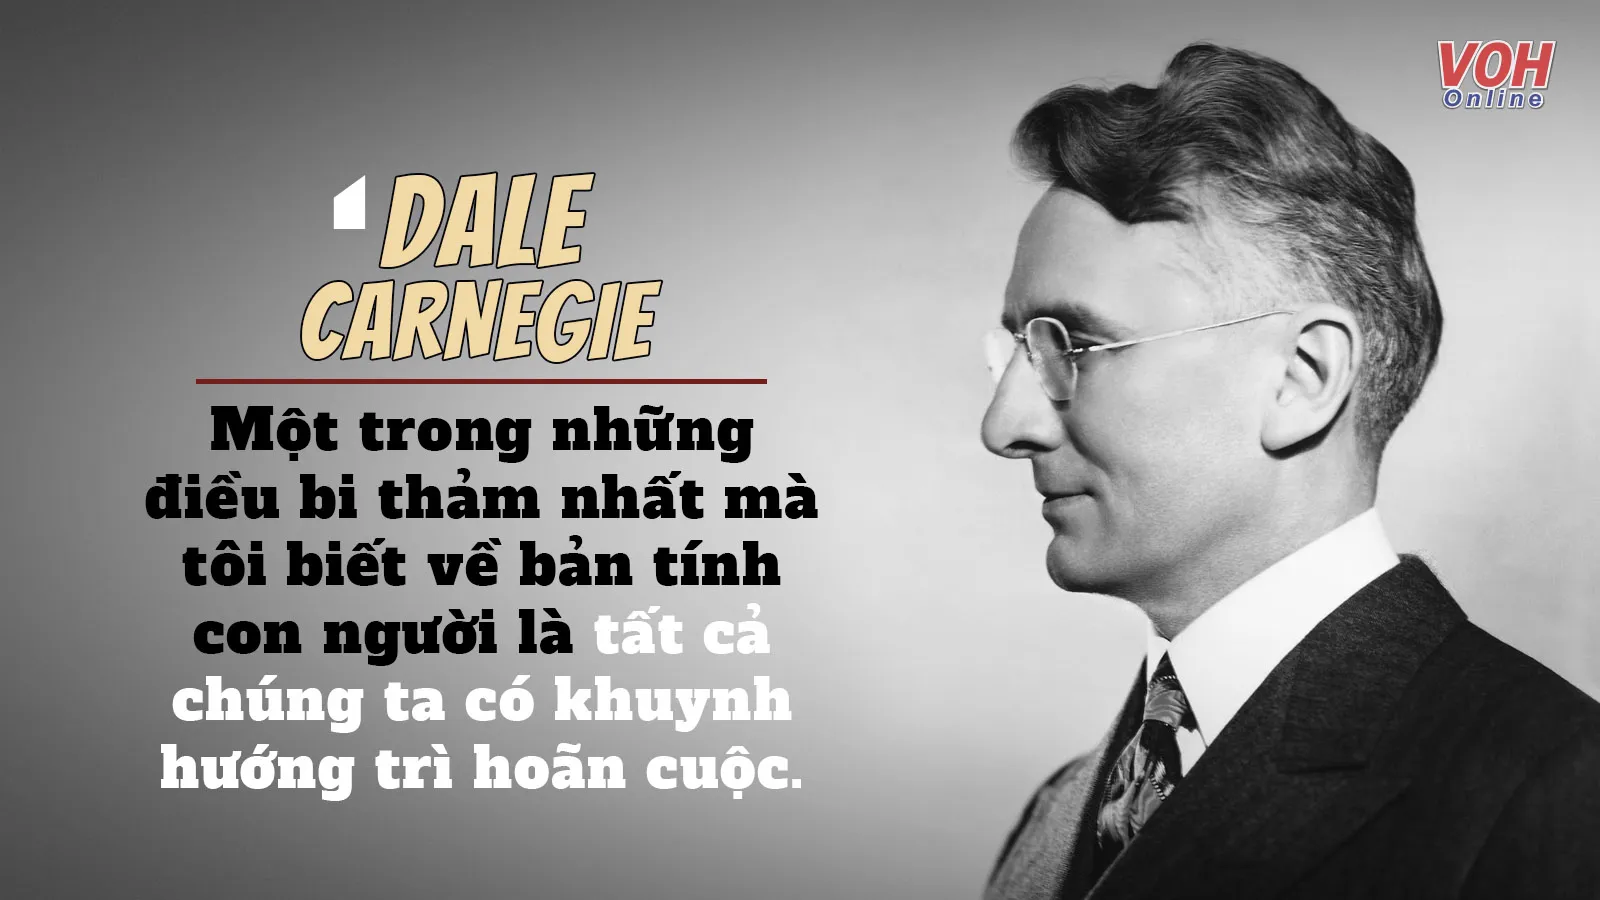 33 câu nói hay của Dale Carnegie giúp bạn nghĩ khác đi, yêu thương và cho đi nhiều hơn!